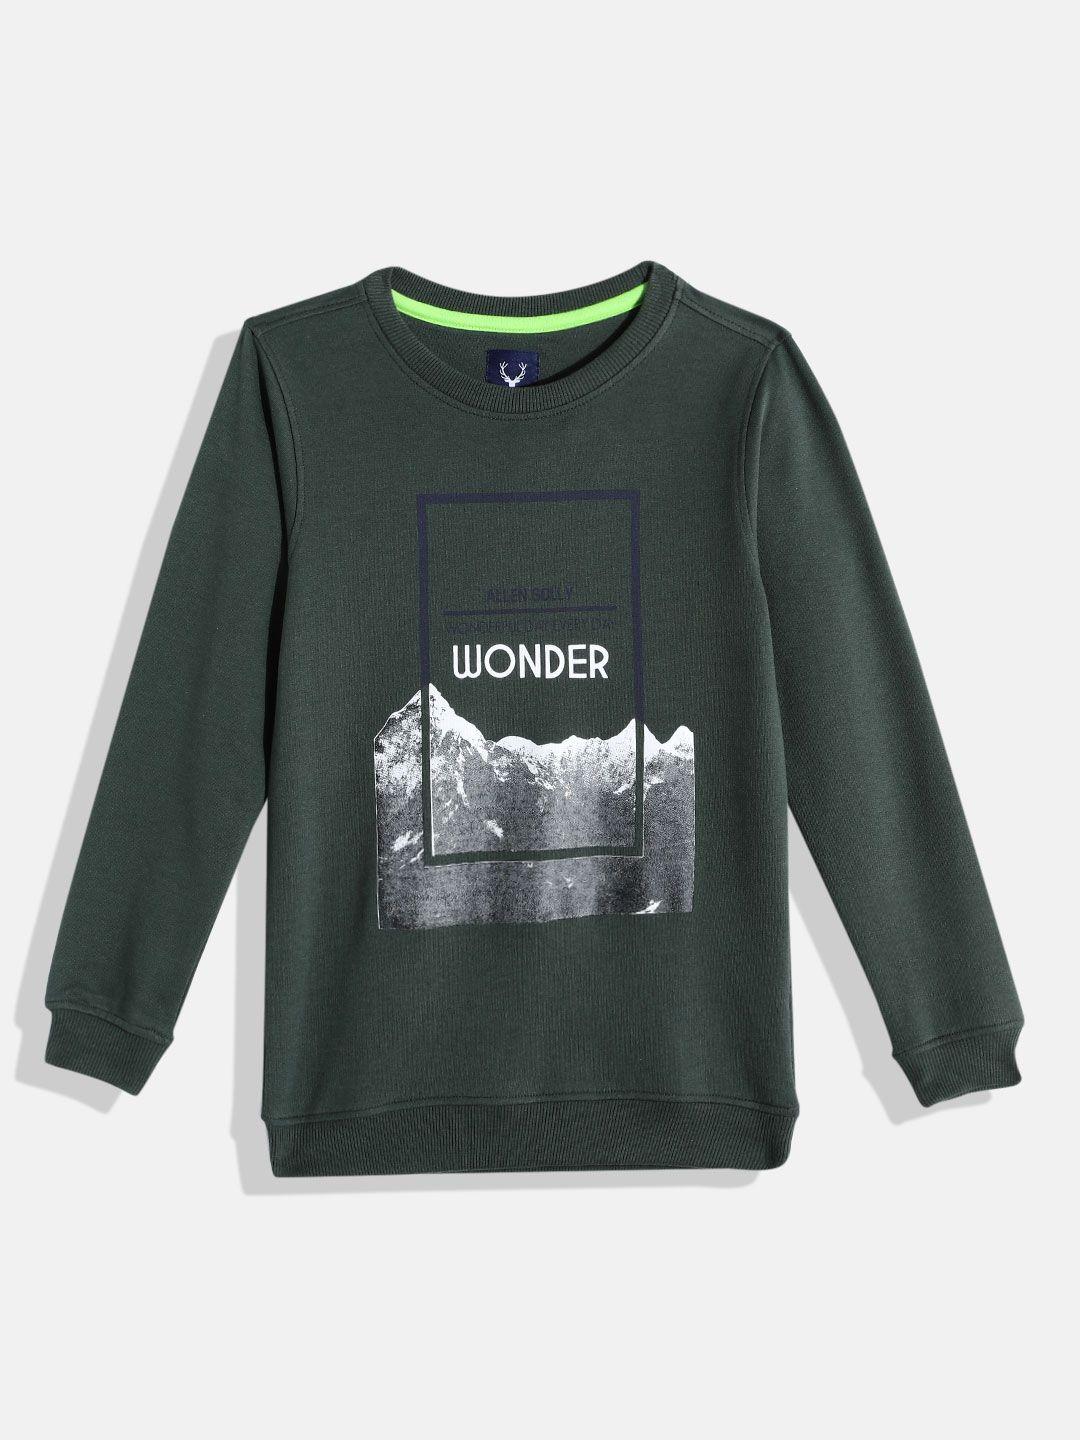 allen-solly-junior-boys-olive-green-graphic-print-round-neck-sweatshirt